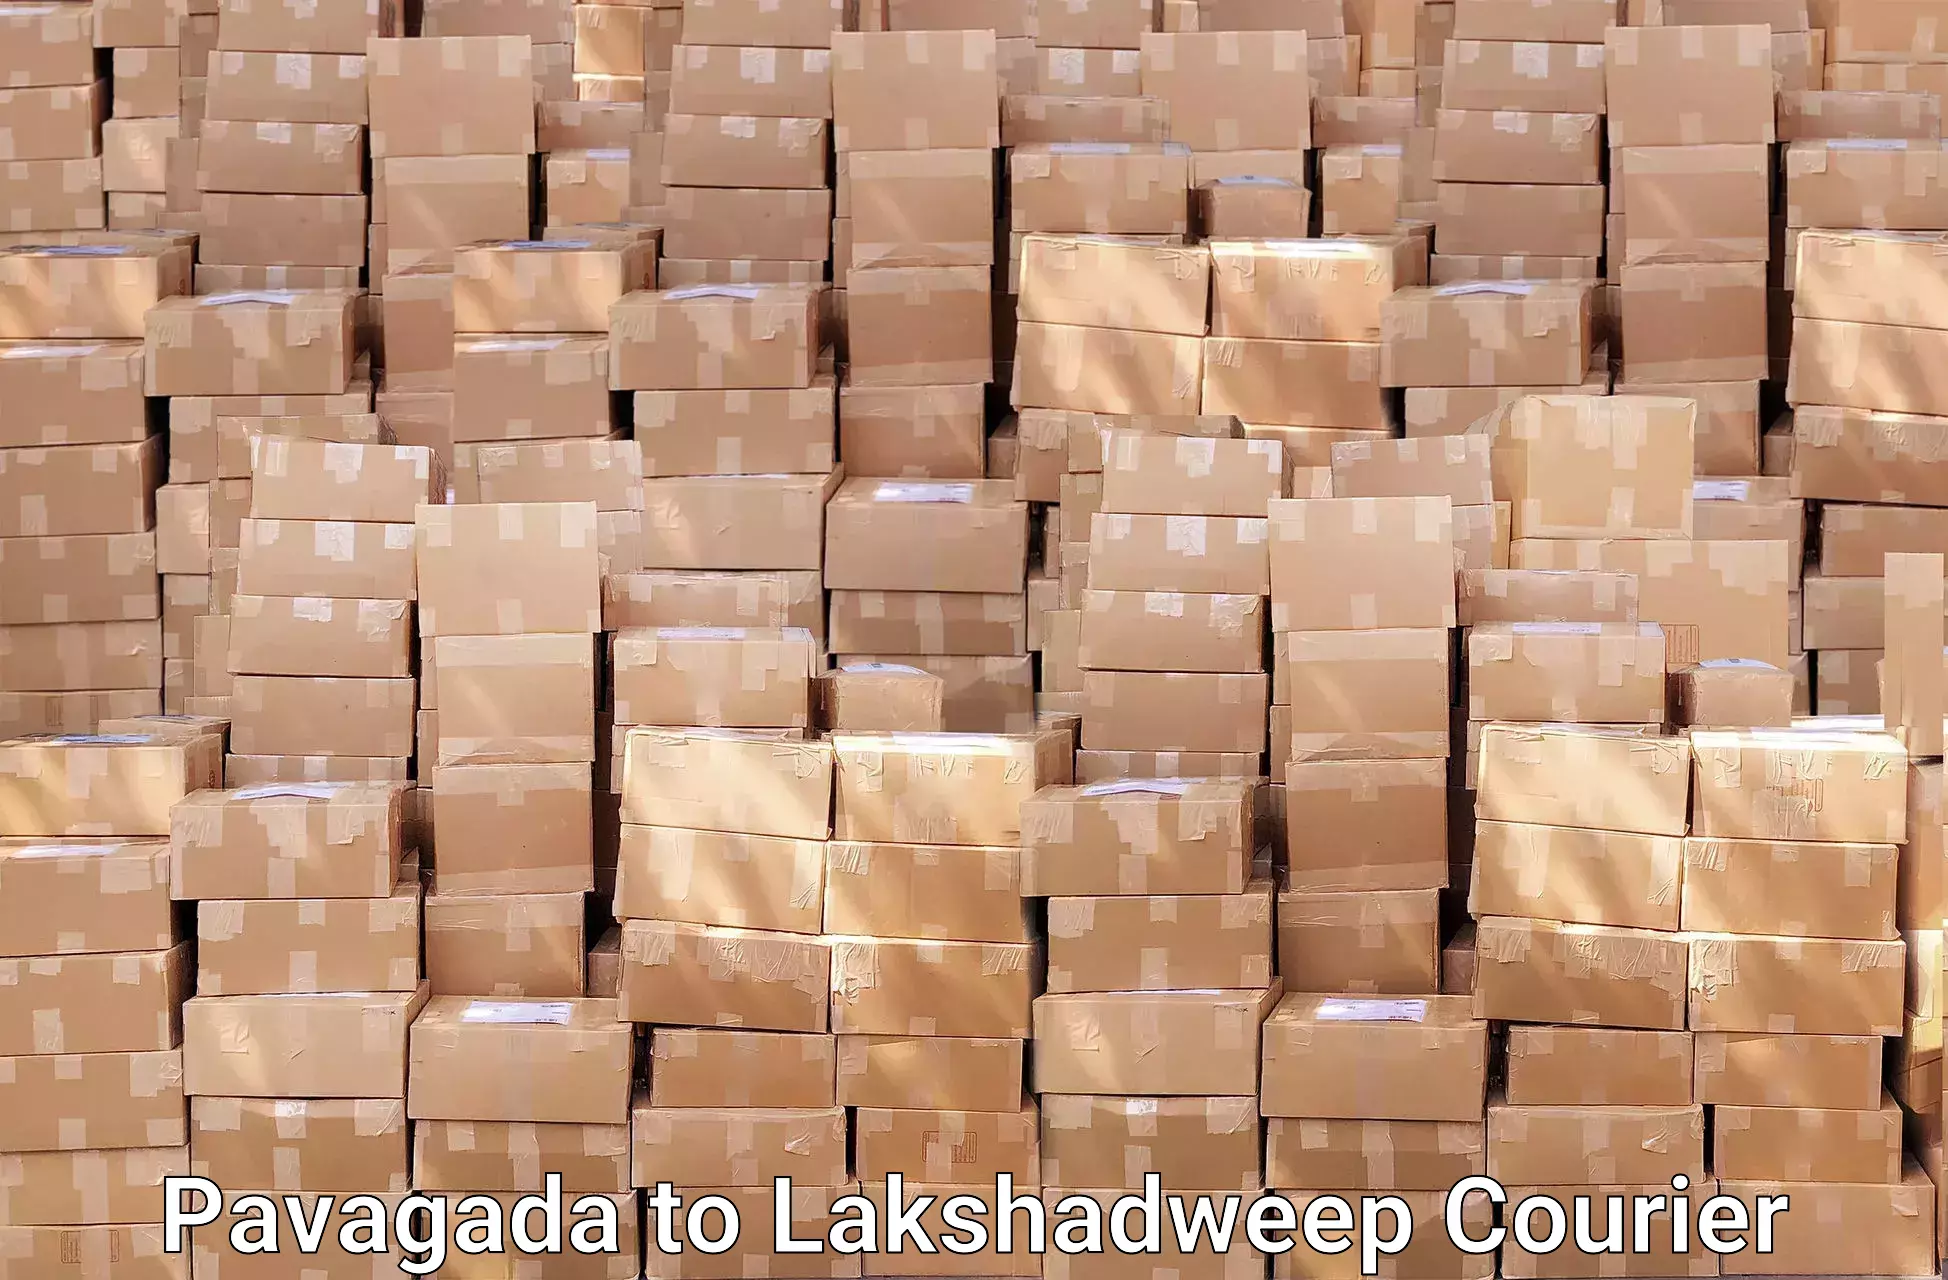 Furniture transport professionals Pavagada to Lakshadweep